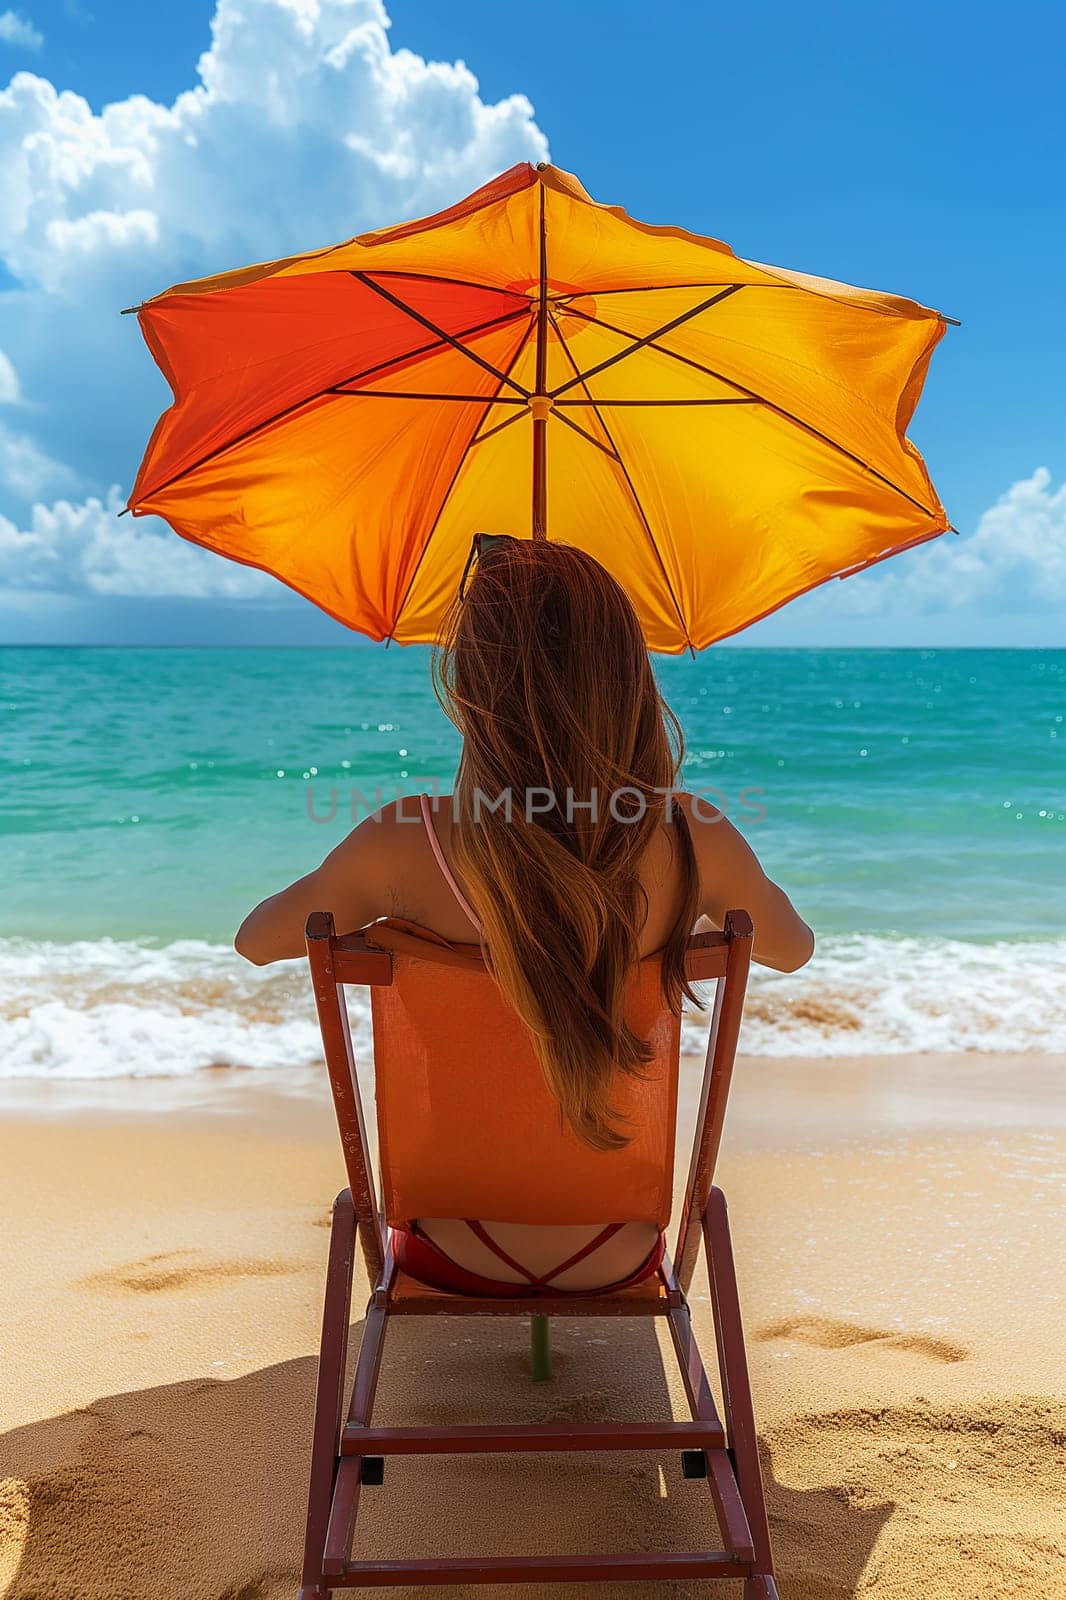 A woman relaxes under an umbrella on a sandy beach facing the ocean.